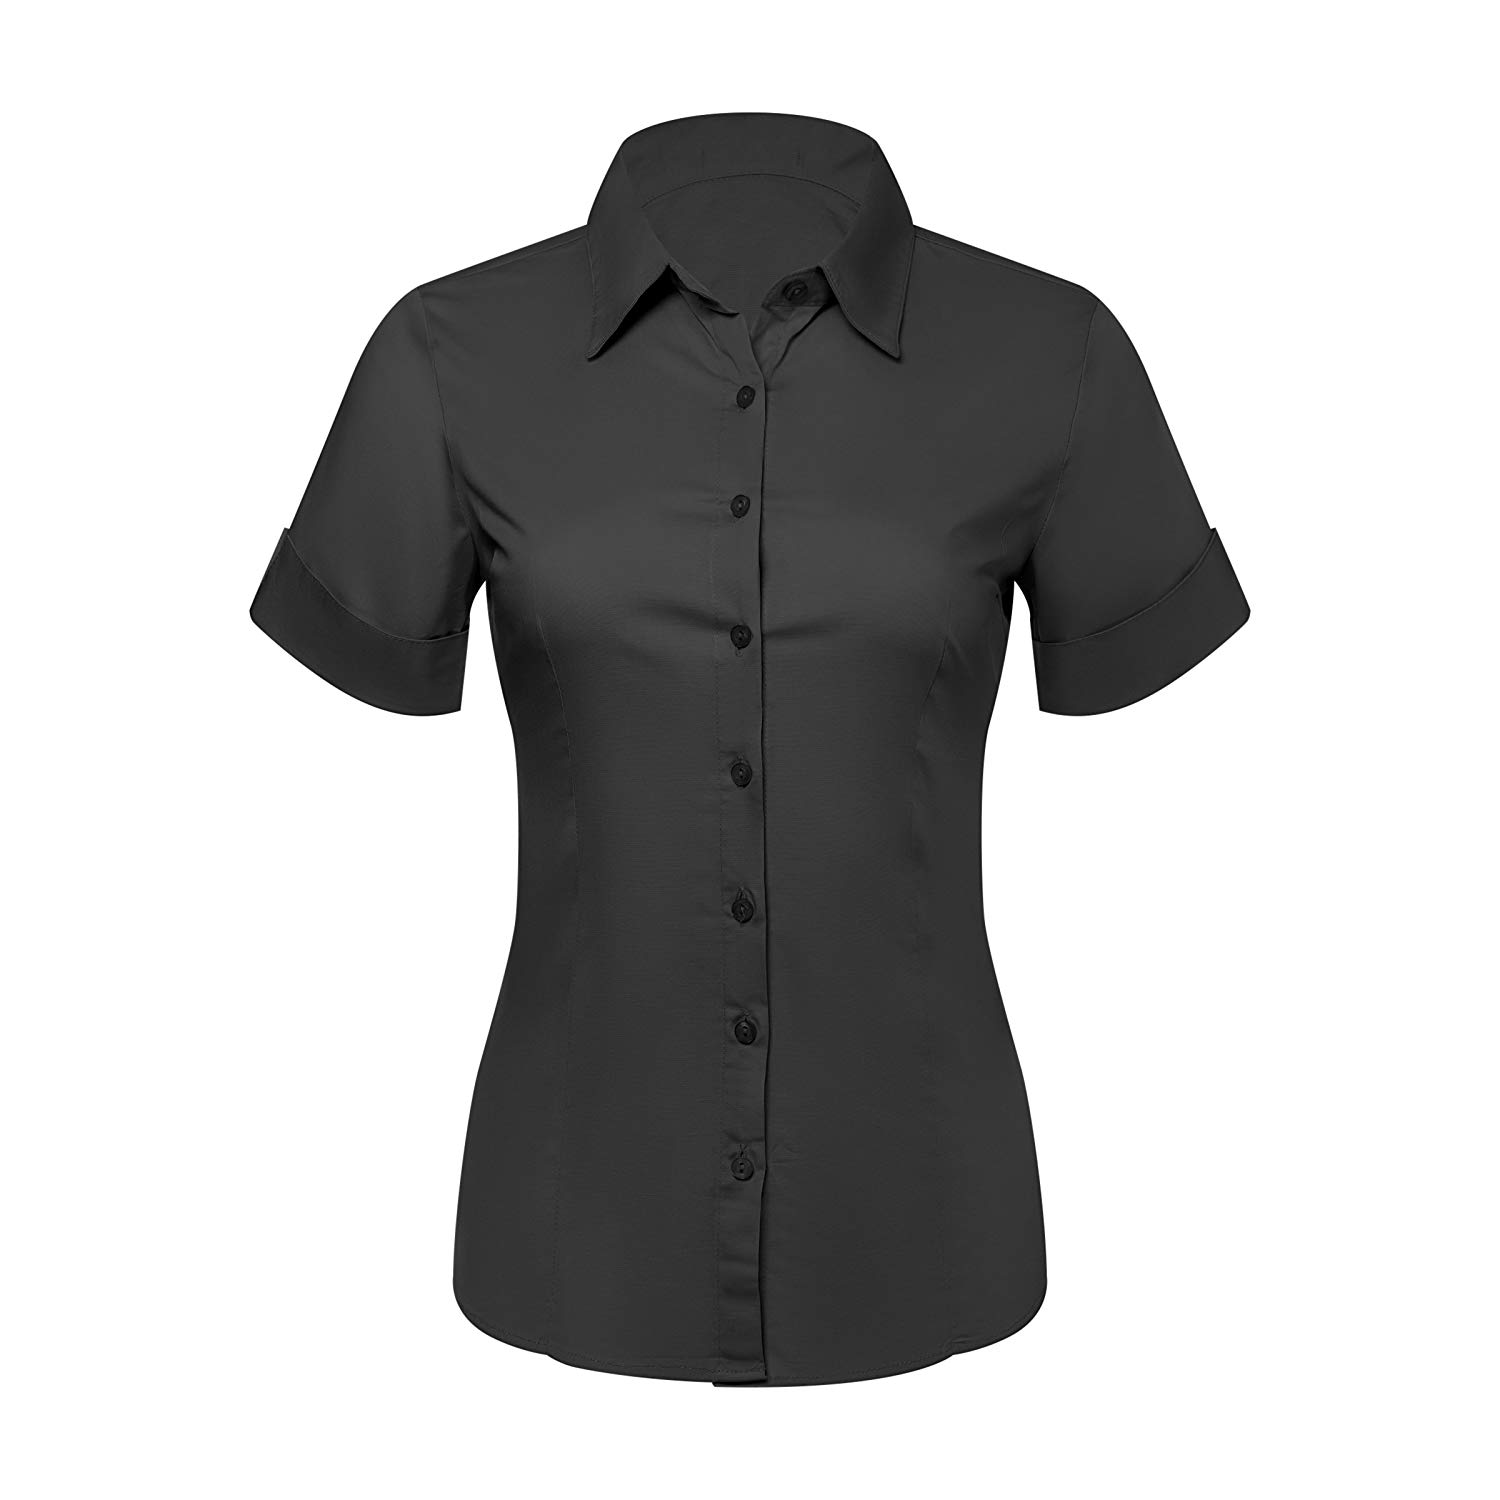 Bluffton black button up shirt womens short sleeve womens